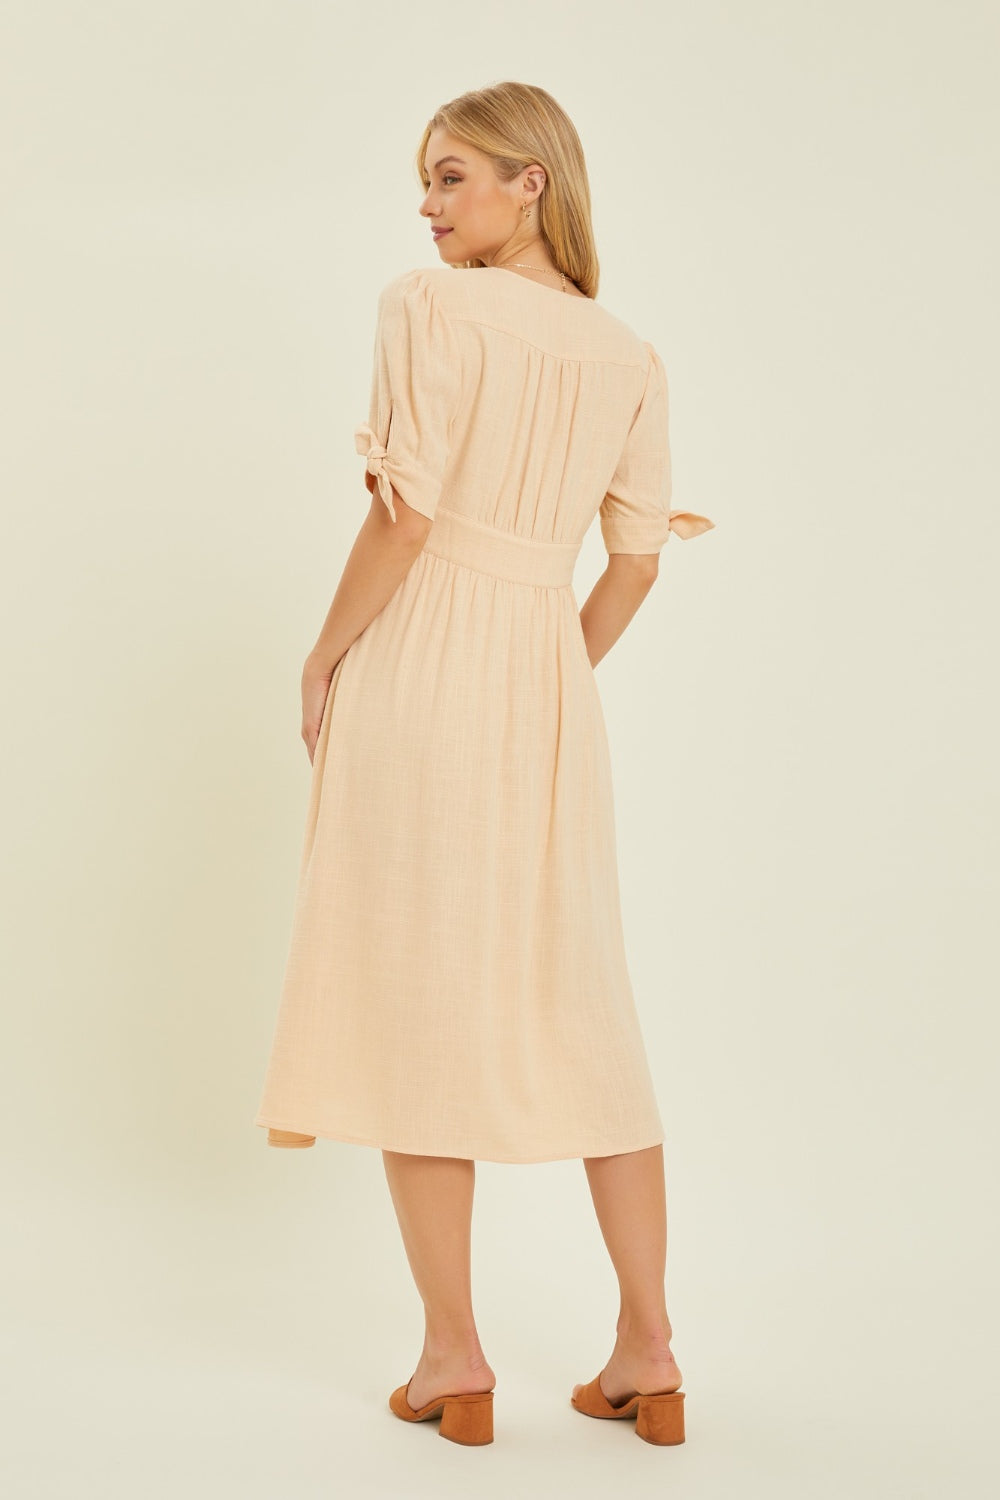 HEYSON Full Size Textured Linen V-Neck Midi Dress